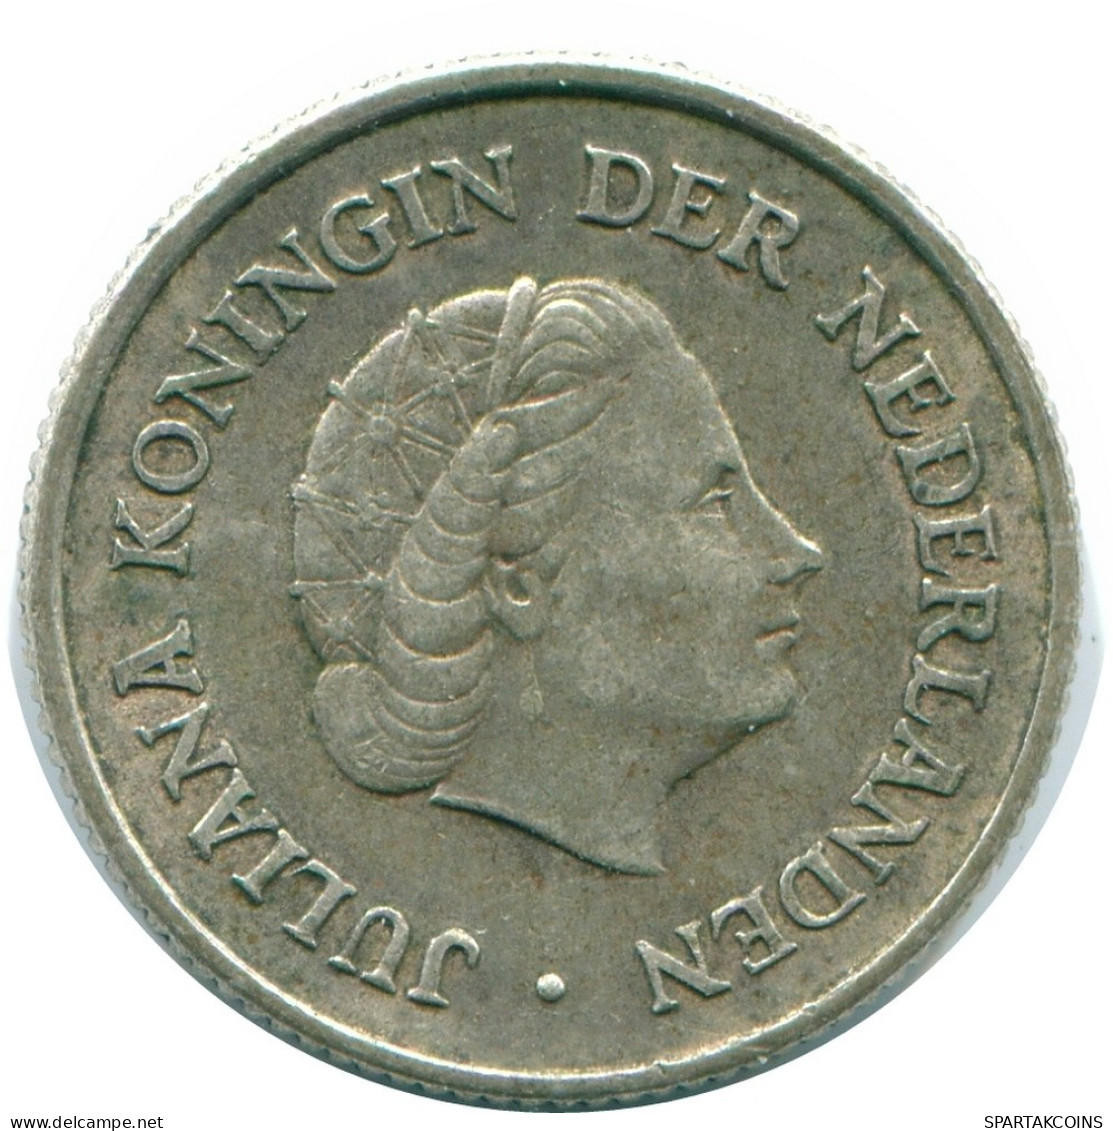 1/4 GULDEN 1965 NIEDERLÄNDISCHE ANTILLEN SILBER Koloniale Münze #NL11382.4.D.A - Niederländische Antillen